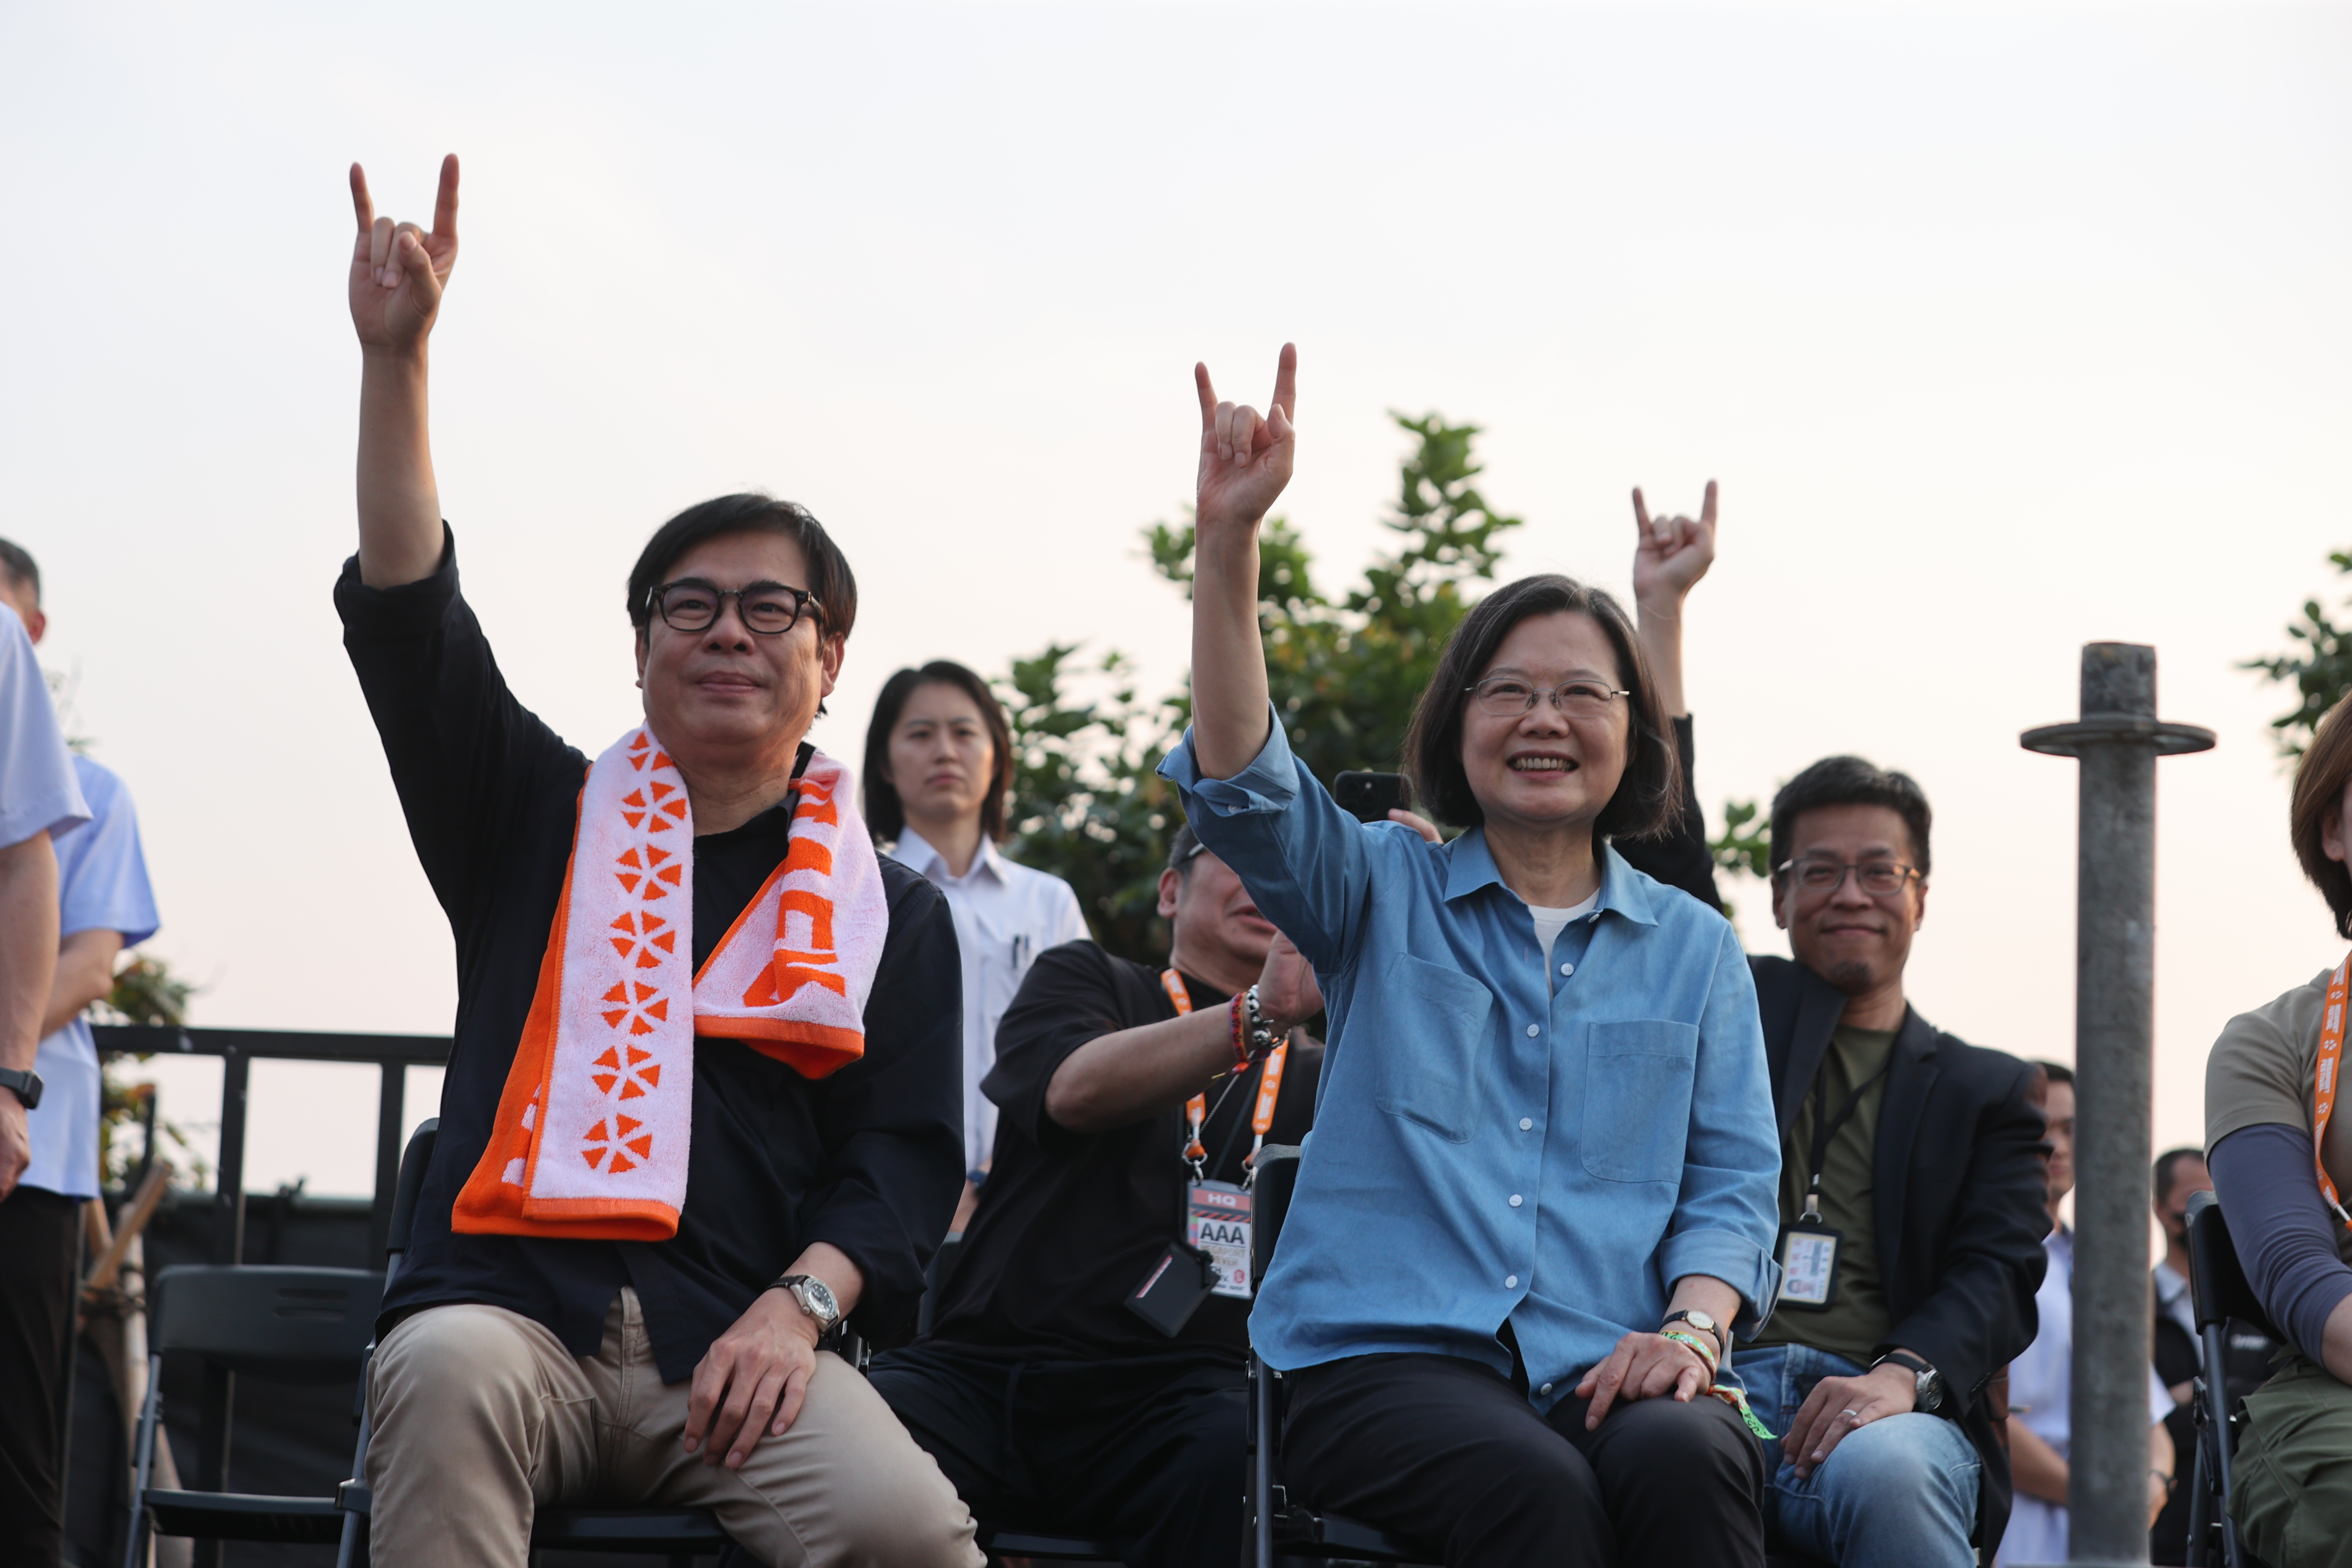 高雄市长陈其迈（左）教蔡英文总统（右）把大拇指、中指、无名指收起，只举起食指和小拇指，摆出被称为「恶魔之角」的手势。记者刘学圣／摄影